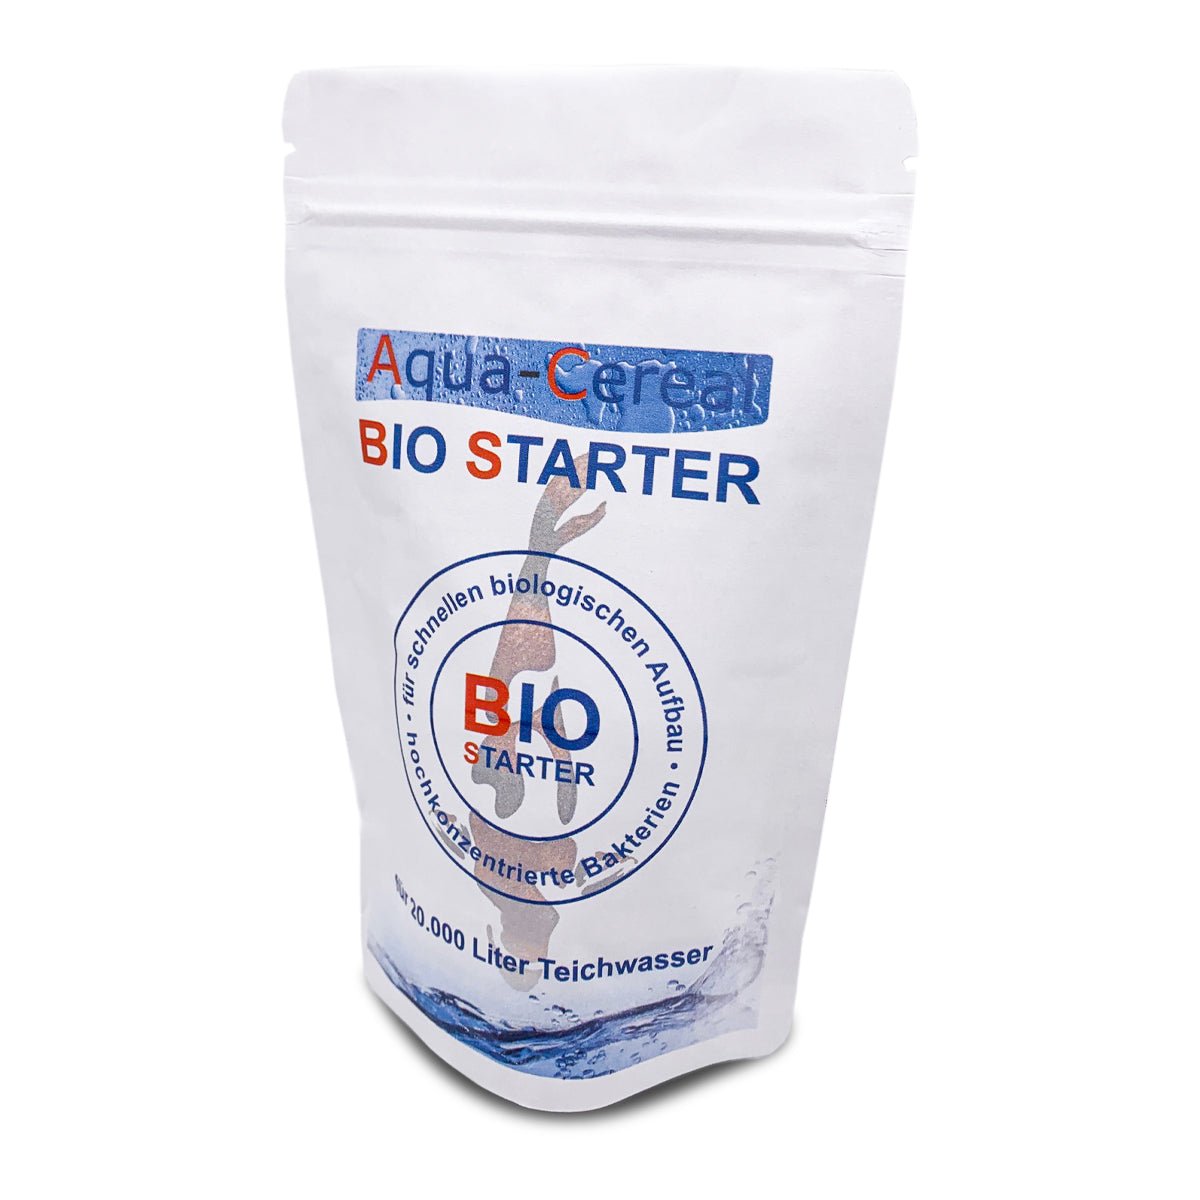 BIO-Starter reicht für 20.000 Liter Teichwasser - Bio-Starter - Niederrhein-Koi